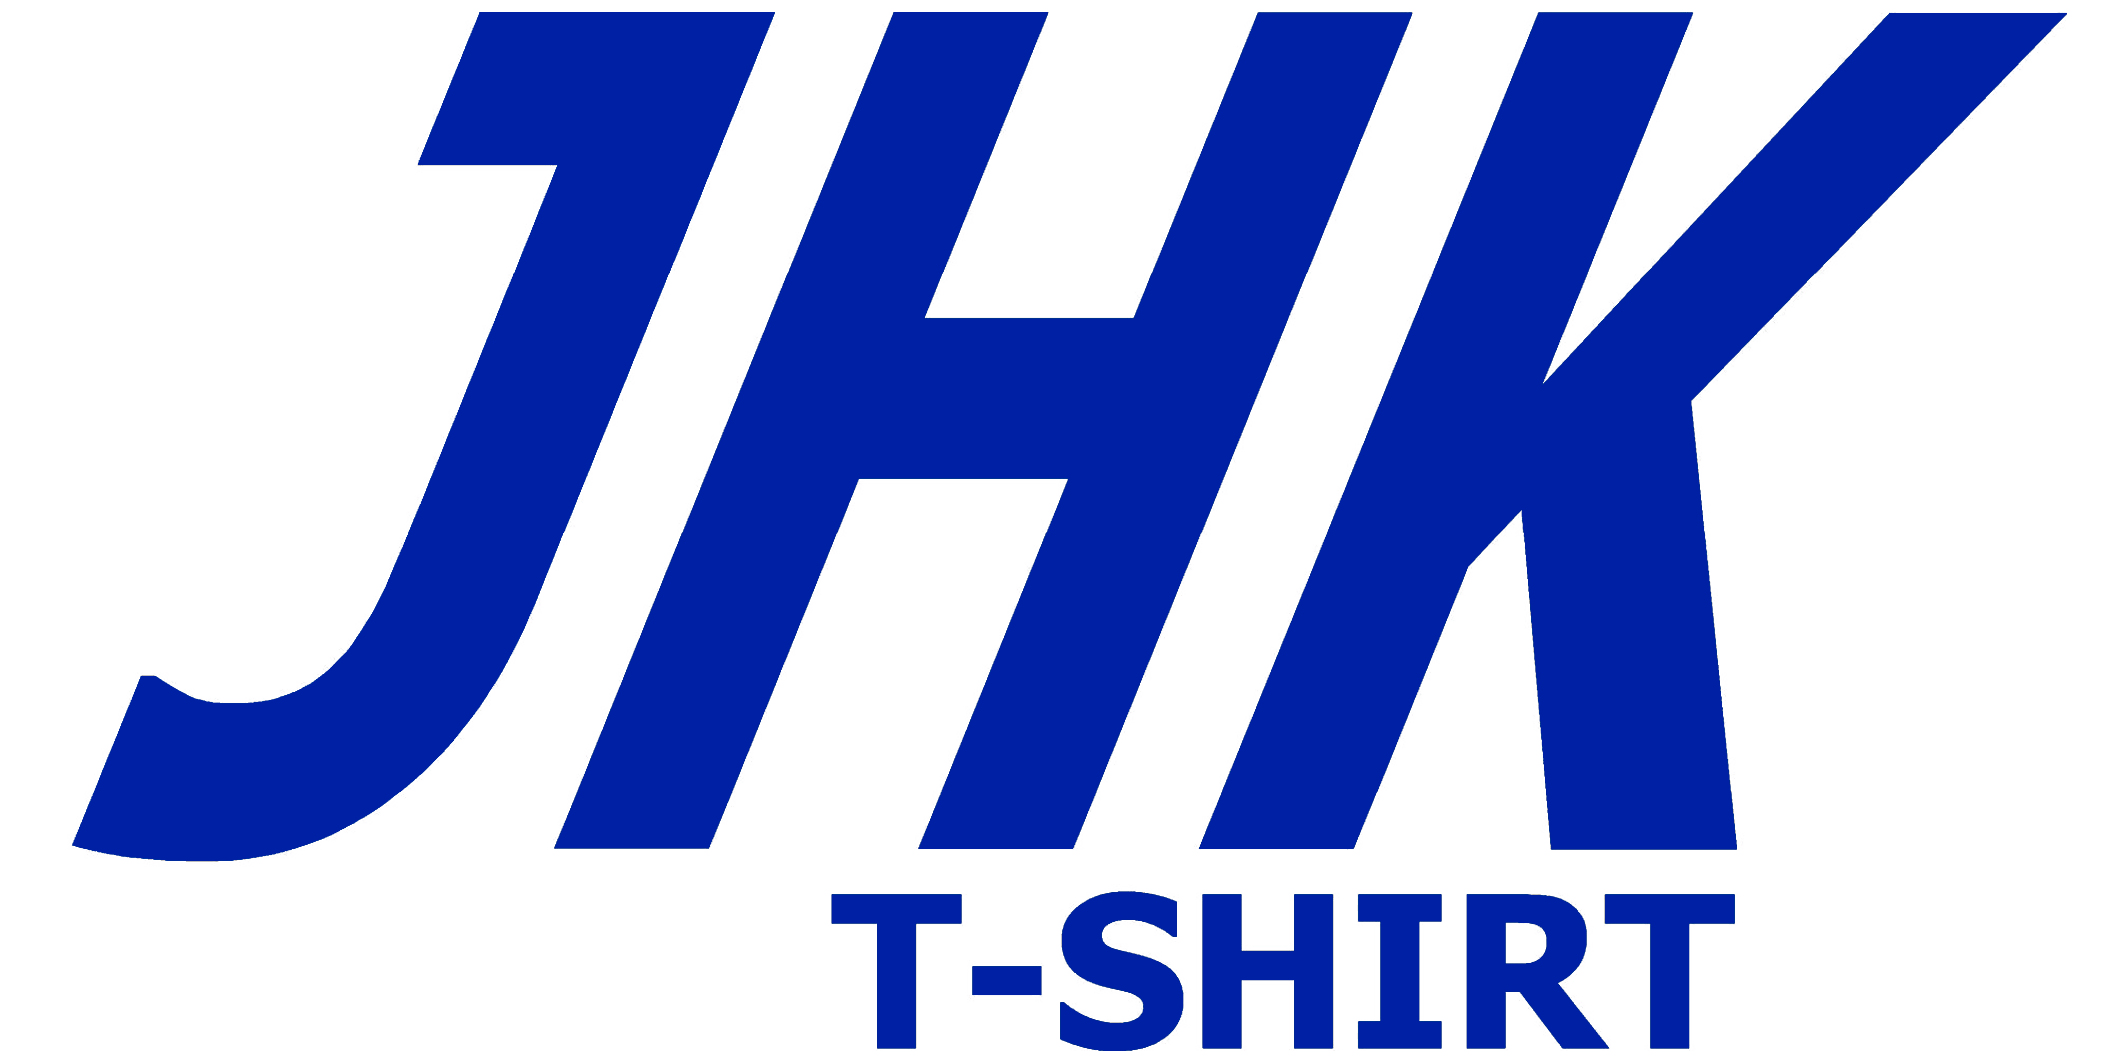 jhk-logo